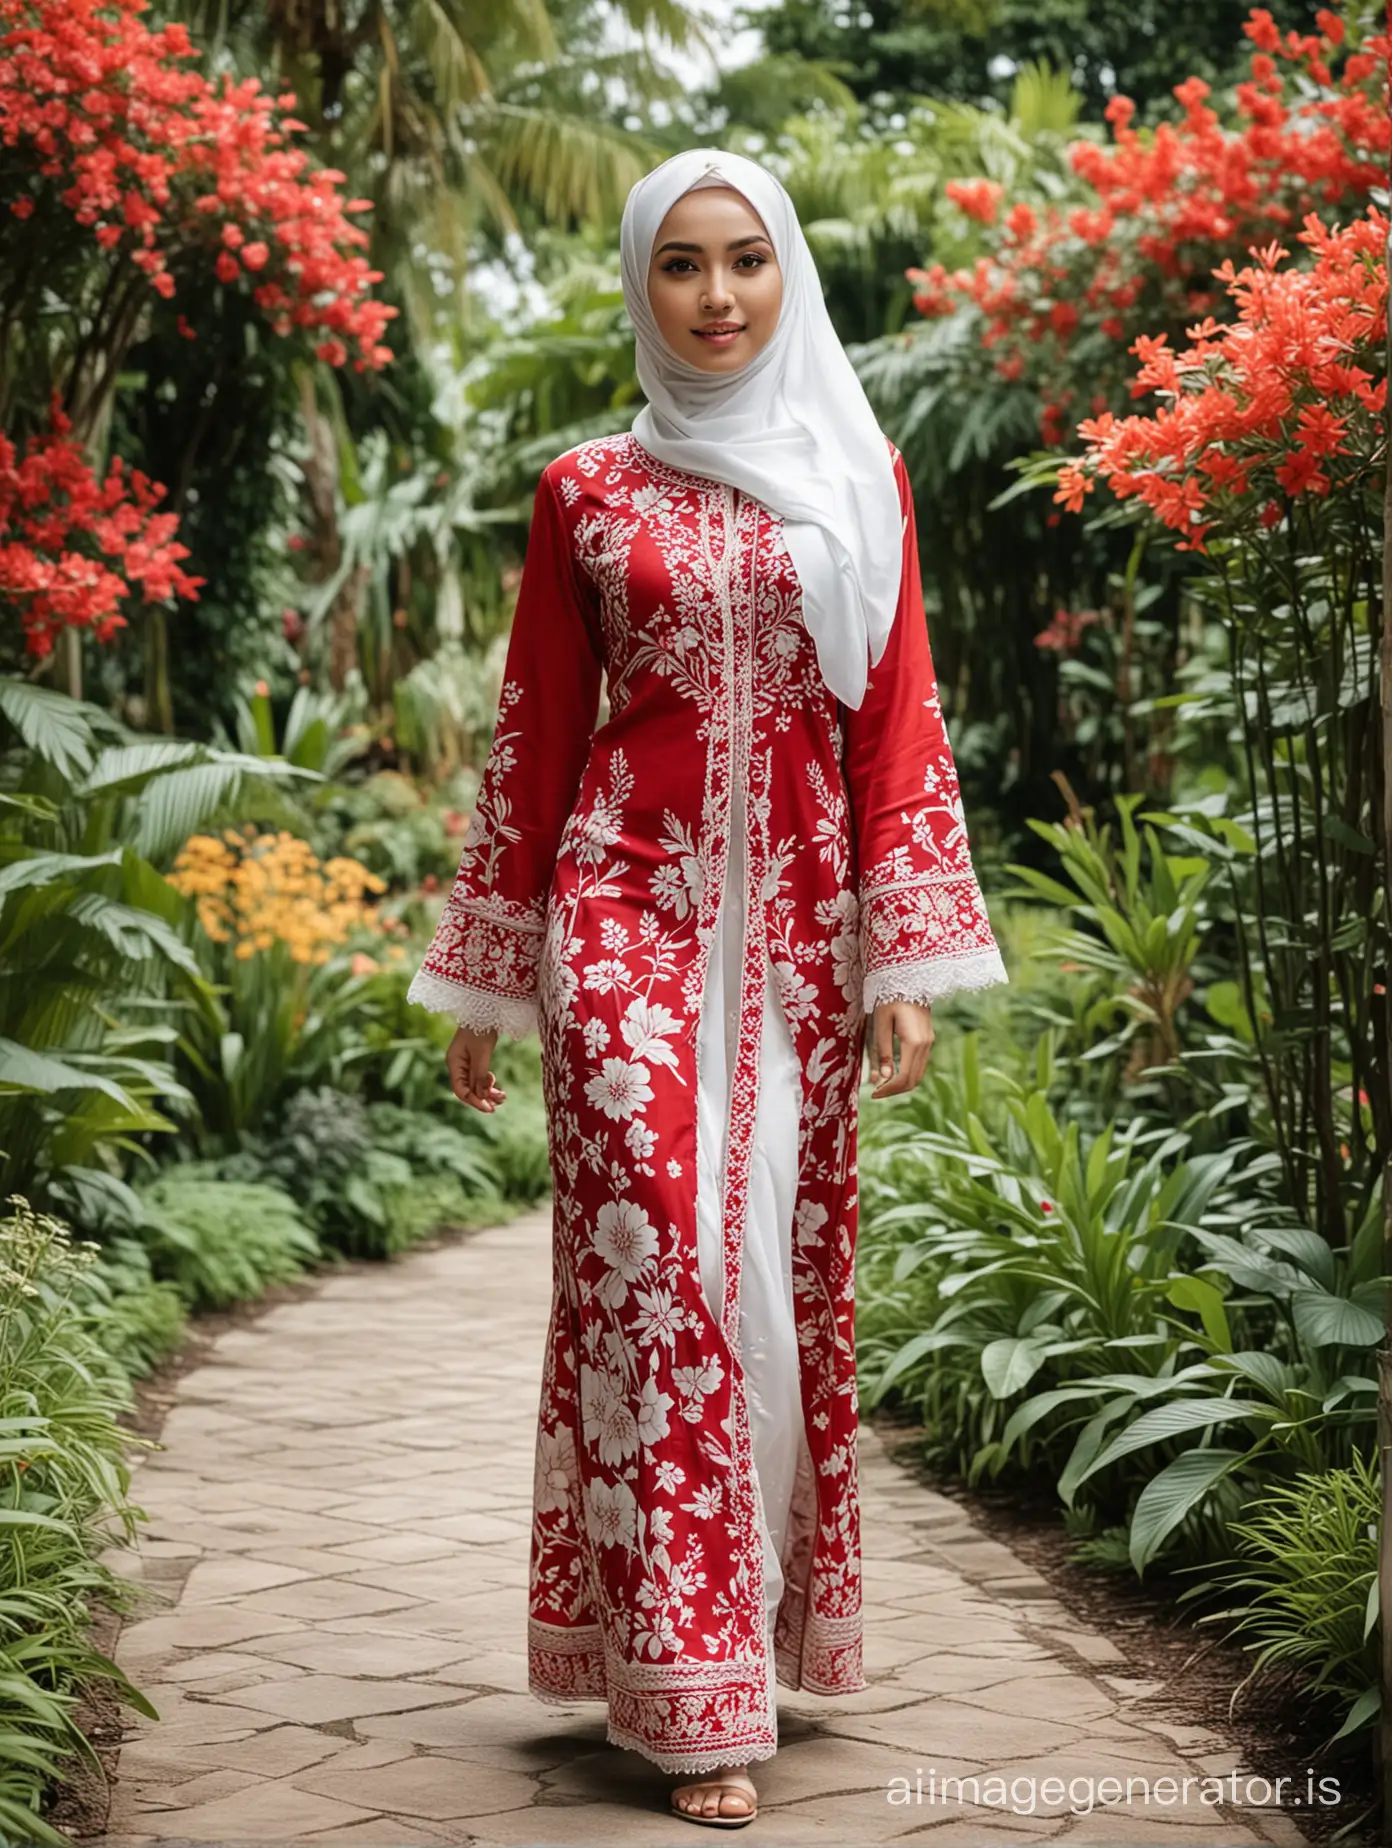 Beautiful-Hijabi-Woman-in-Red-and-White-Kebaya-Strolling-Through-Lush-Garden